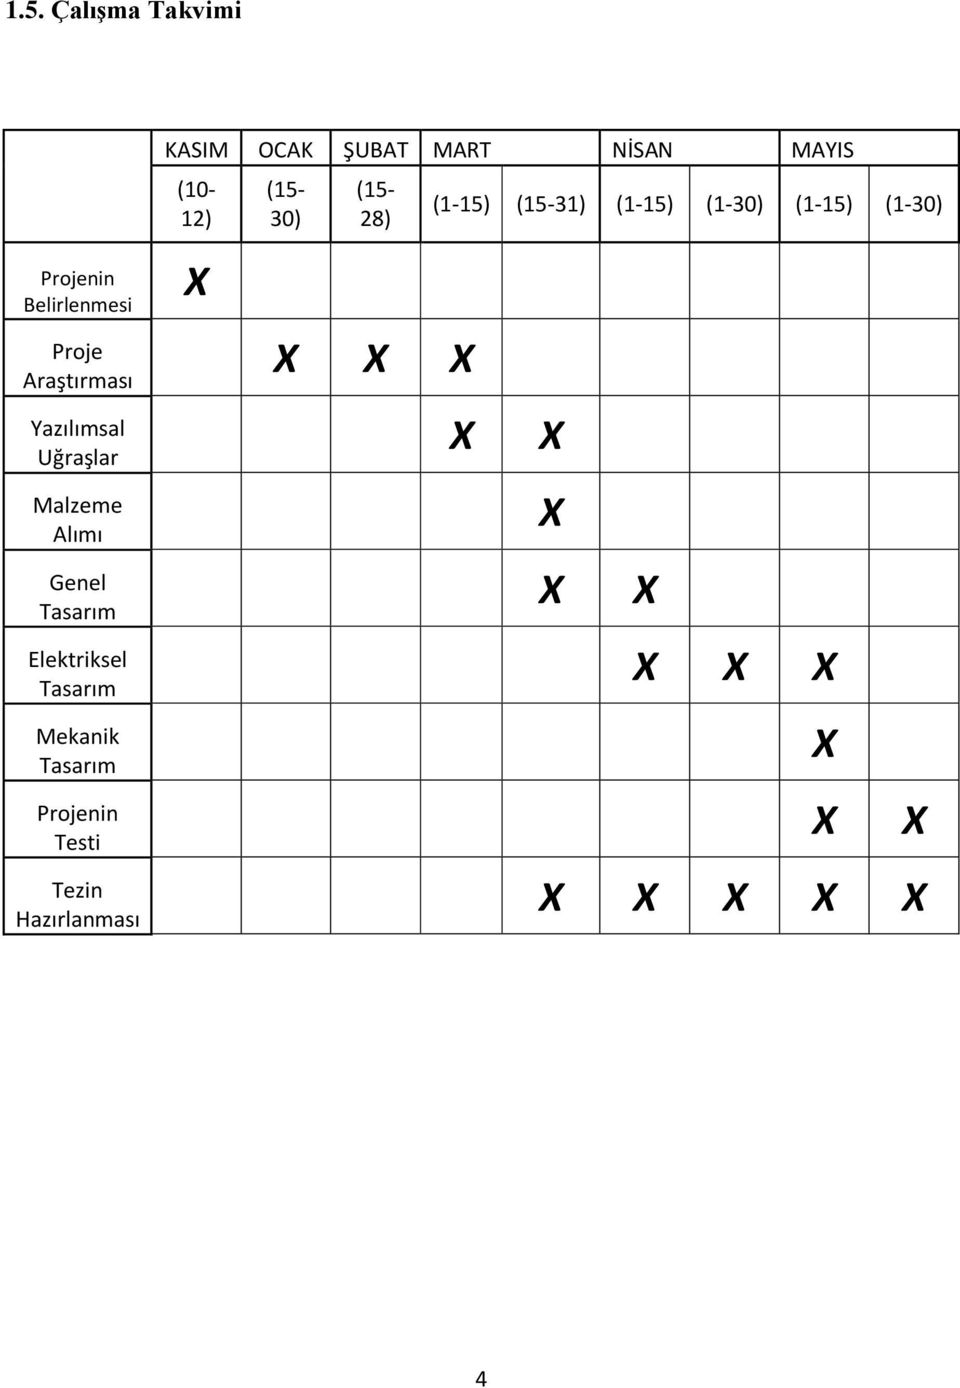 Malzeme Alımı Genel X X Tasarım (1-15) (15-31) (1-15) (1-30) (1-15) (1-30)